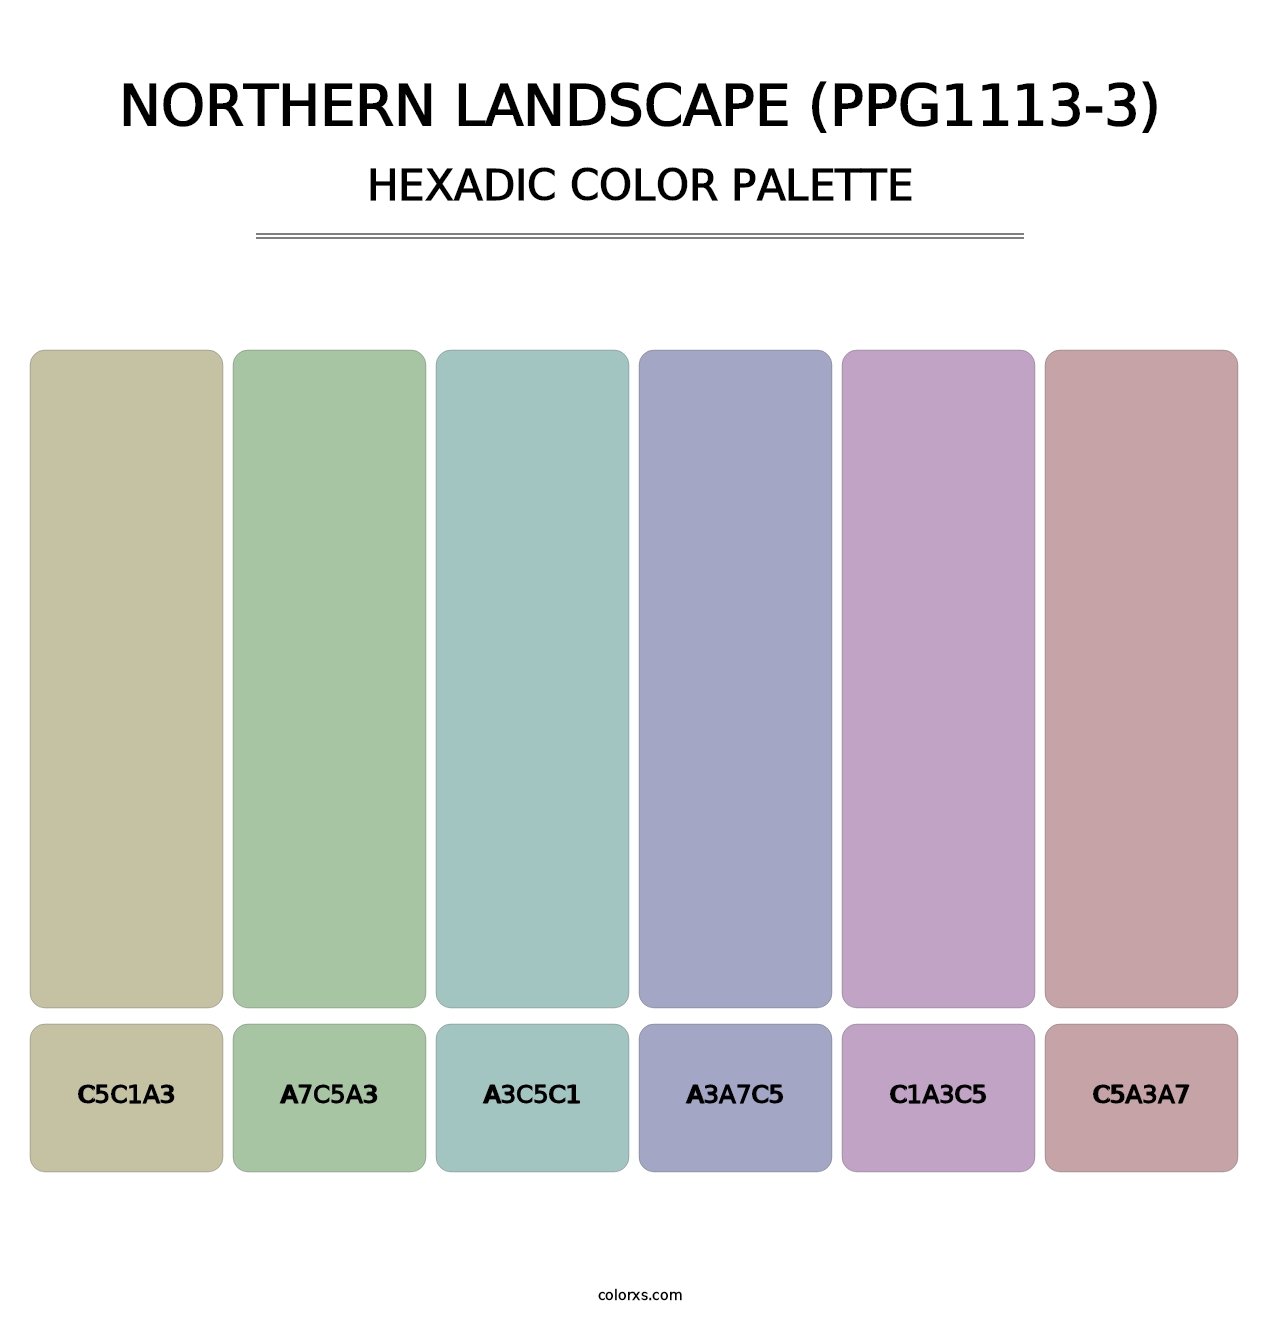 Northern Landscape (PPG1113-3) - Hexadic Color Palette